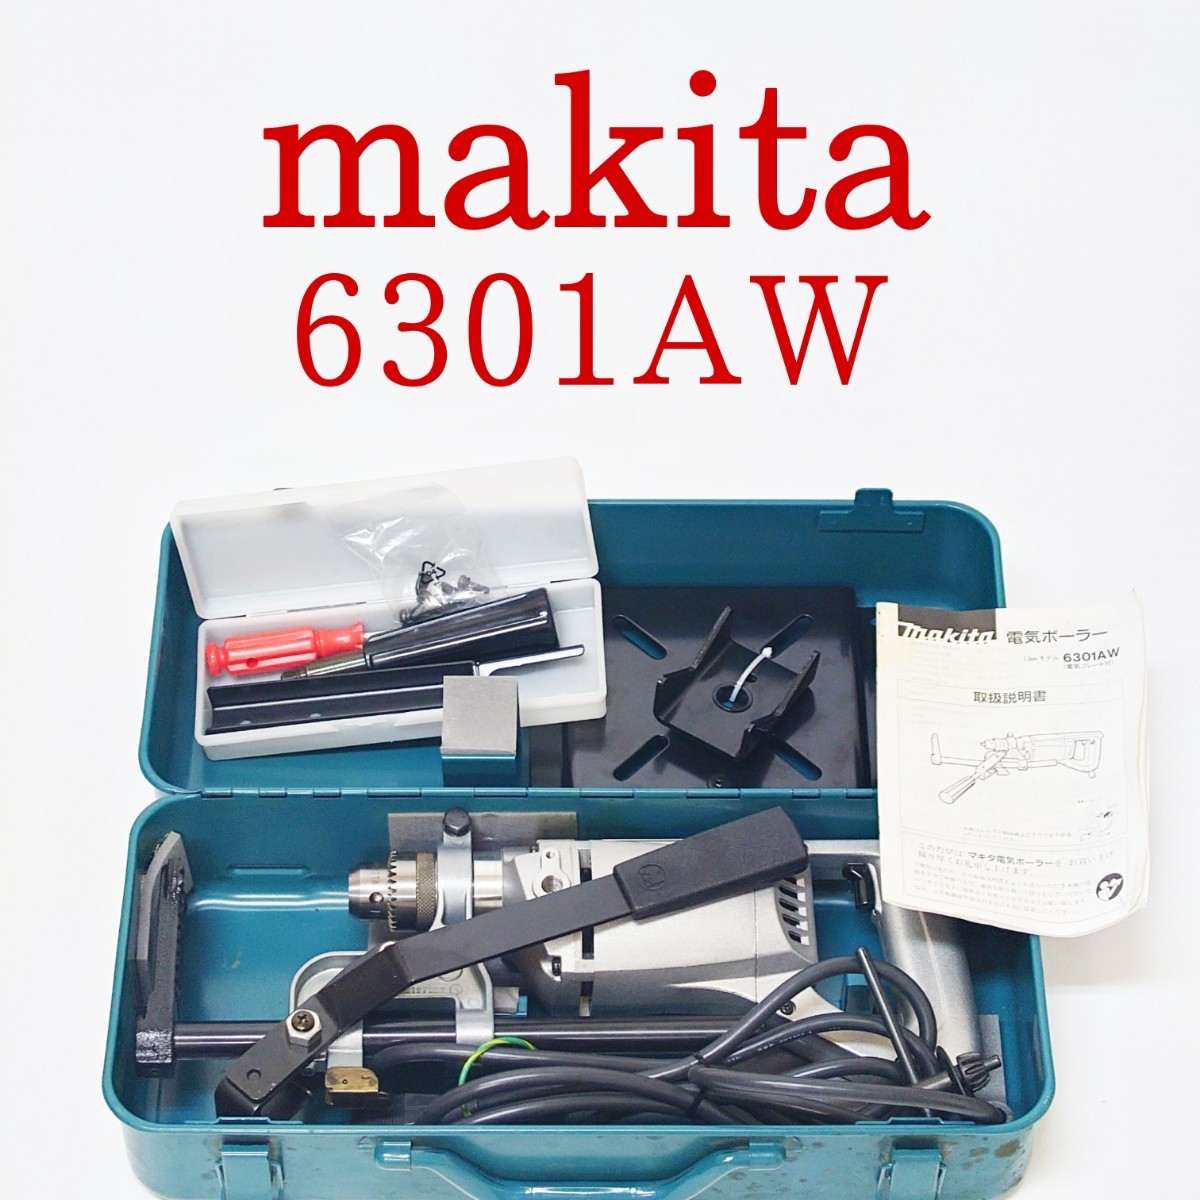 新年の贈り物 電気ボーラー 6301AW 【動作品】makita 13mmドリル